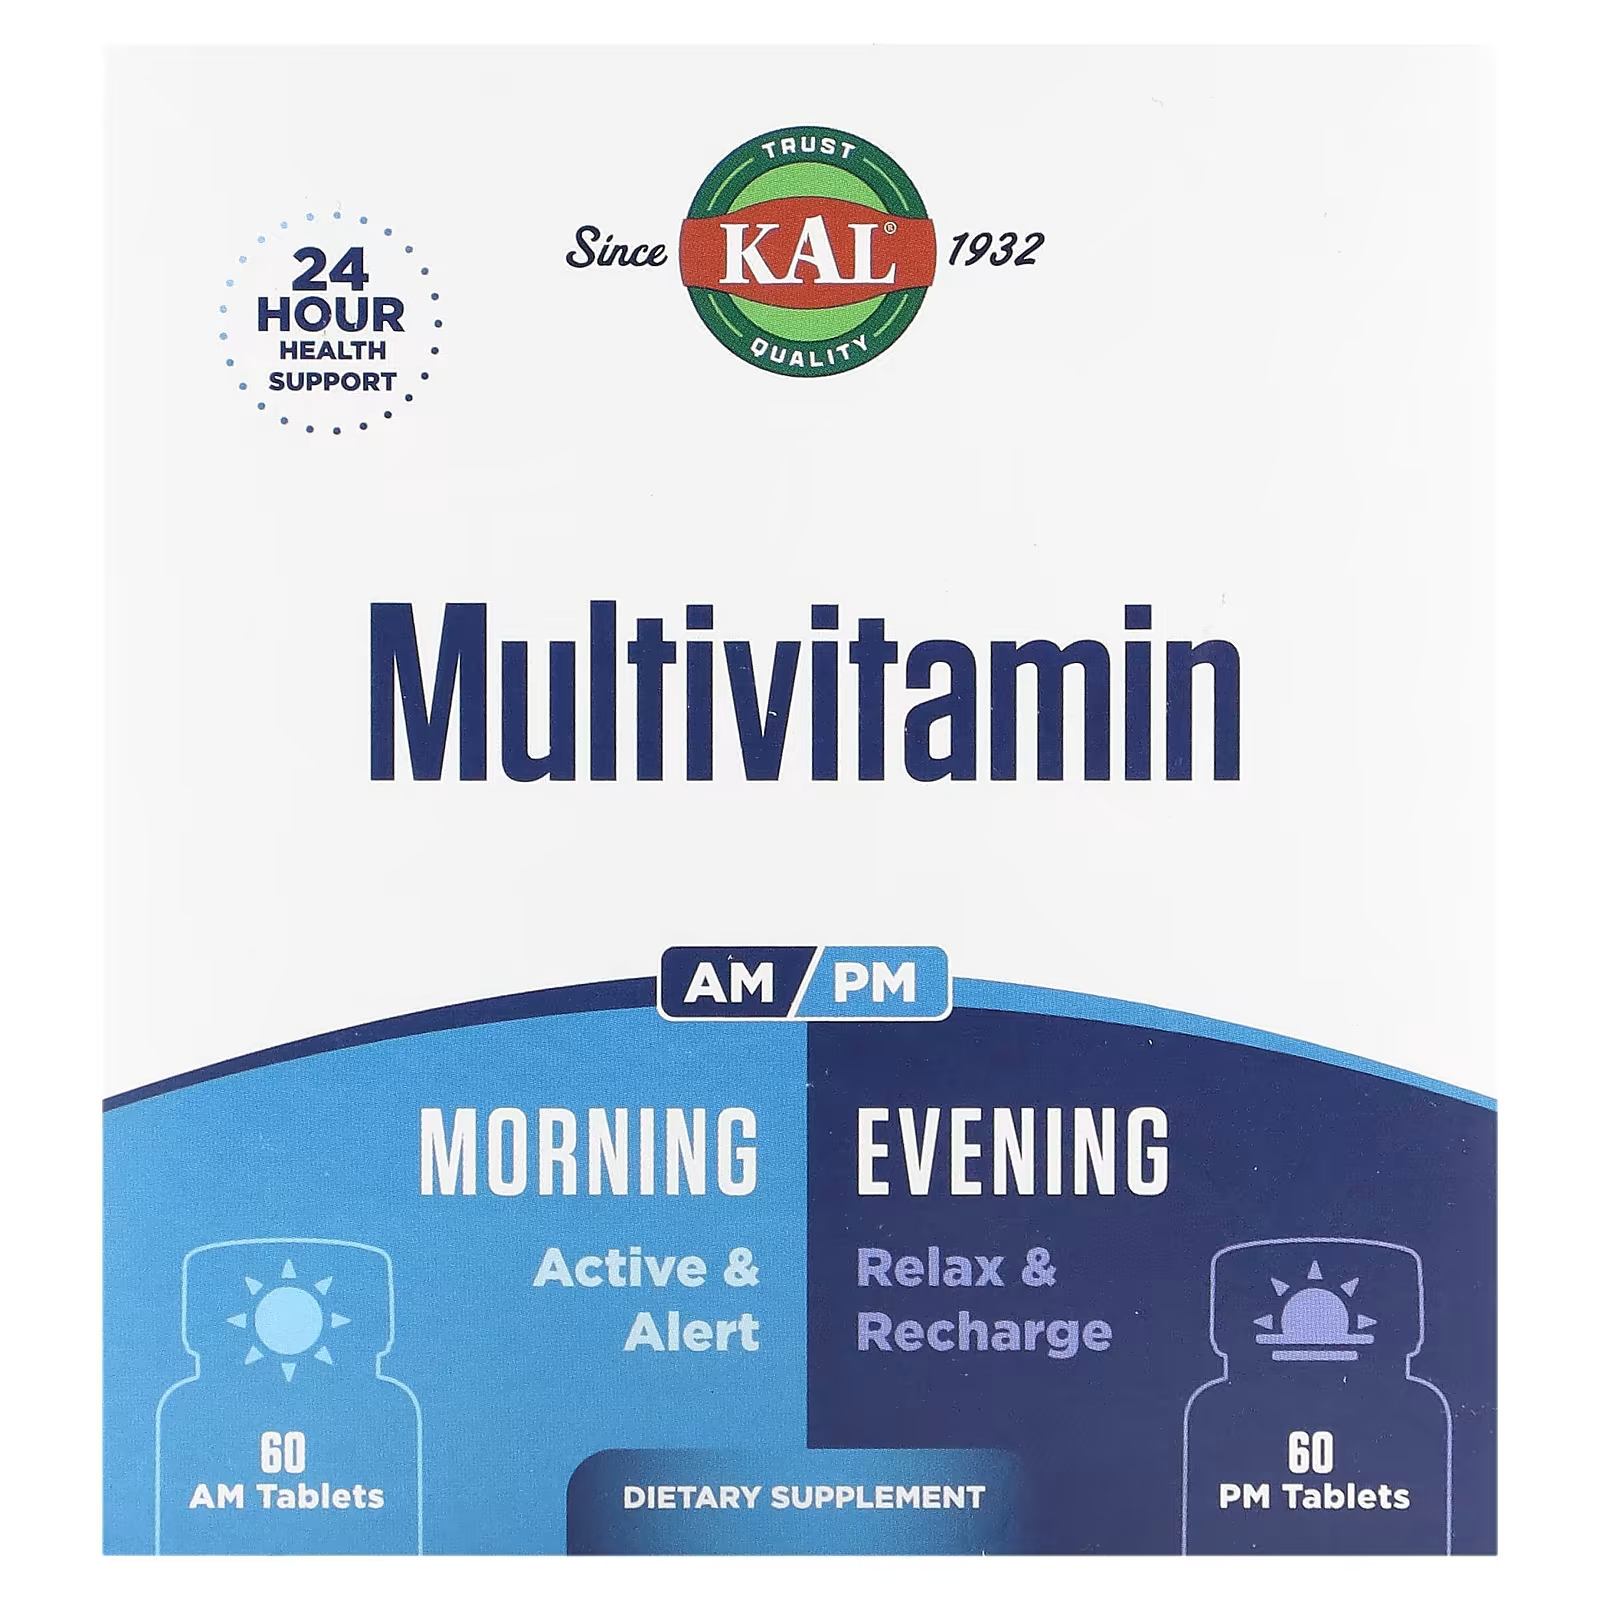 Мультивитамины Kal утром и вечером, 2 упаковки по 60 таблеток nature s way perimenopause formula препарат в период пременопаузы для использования утром и вечером 60 таблеток